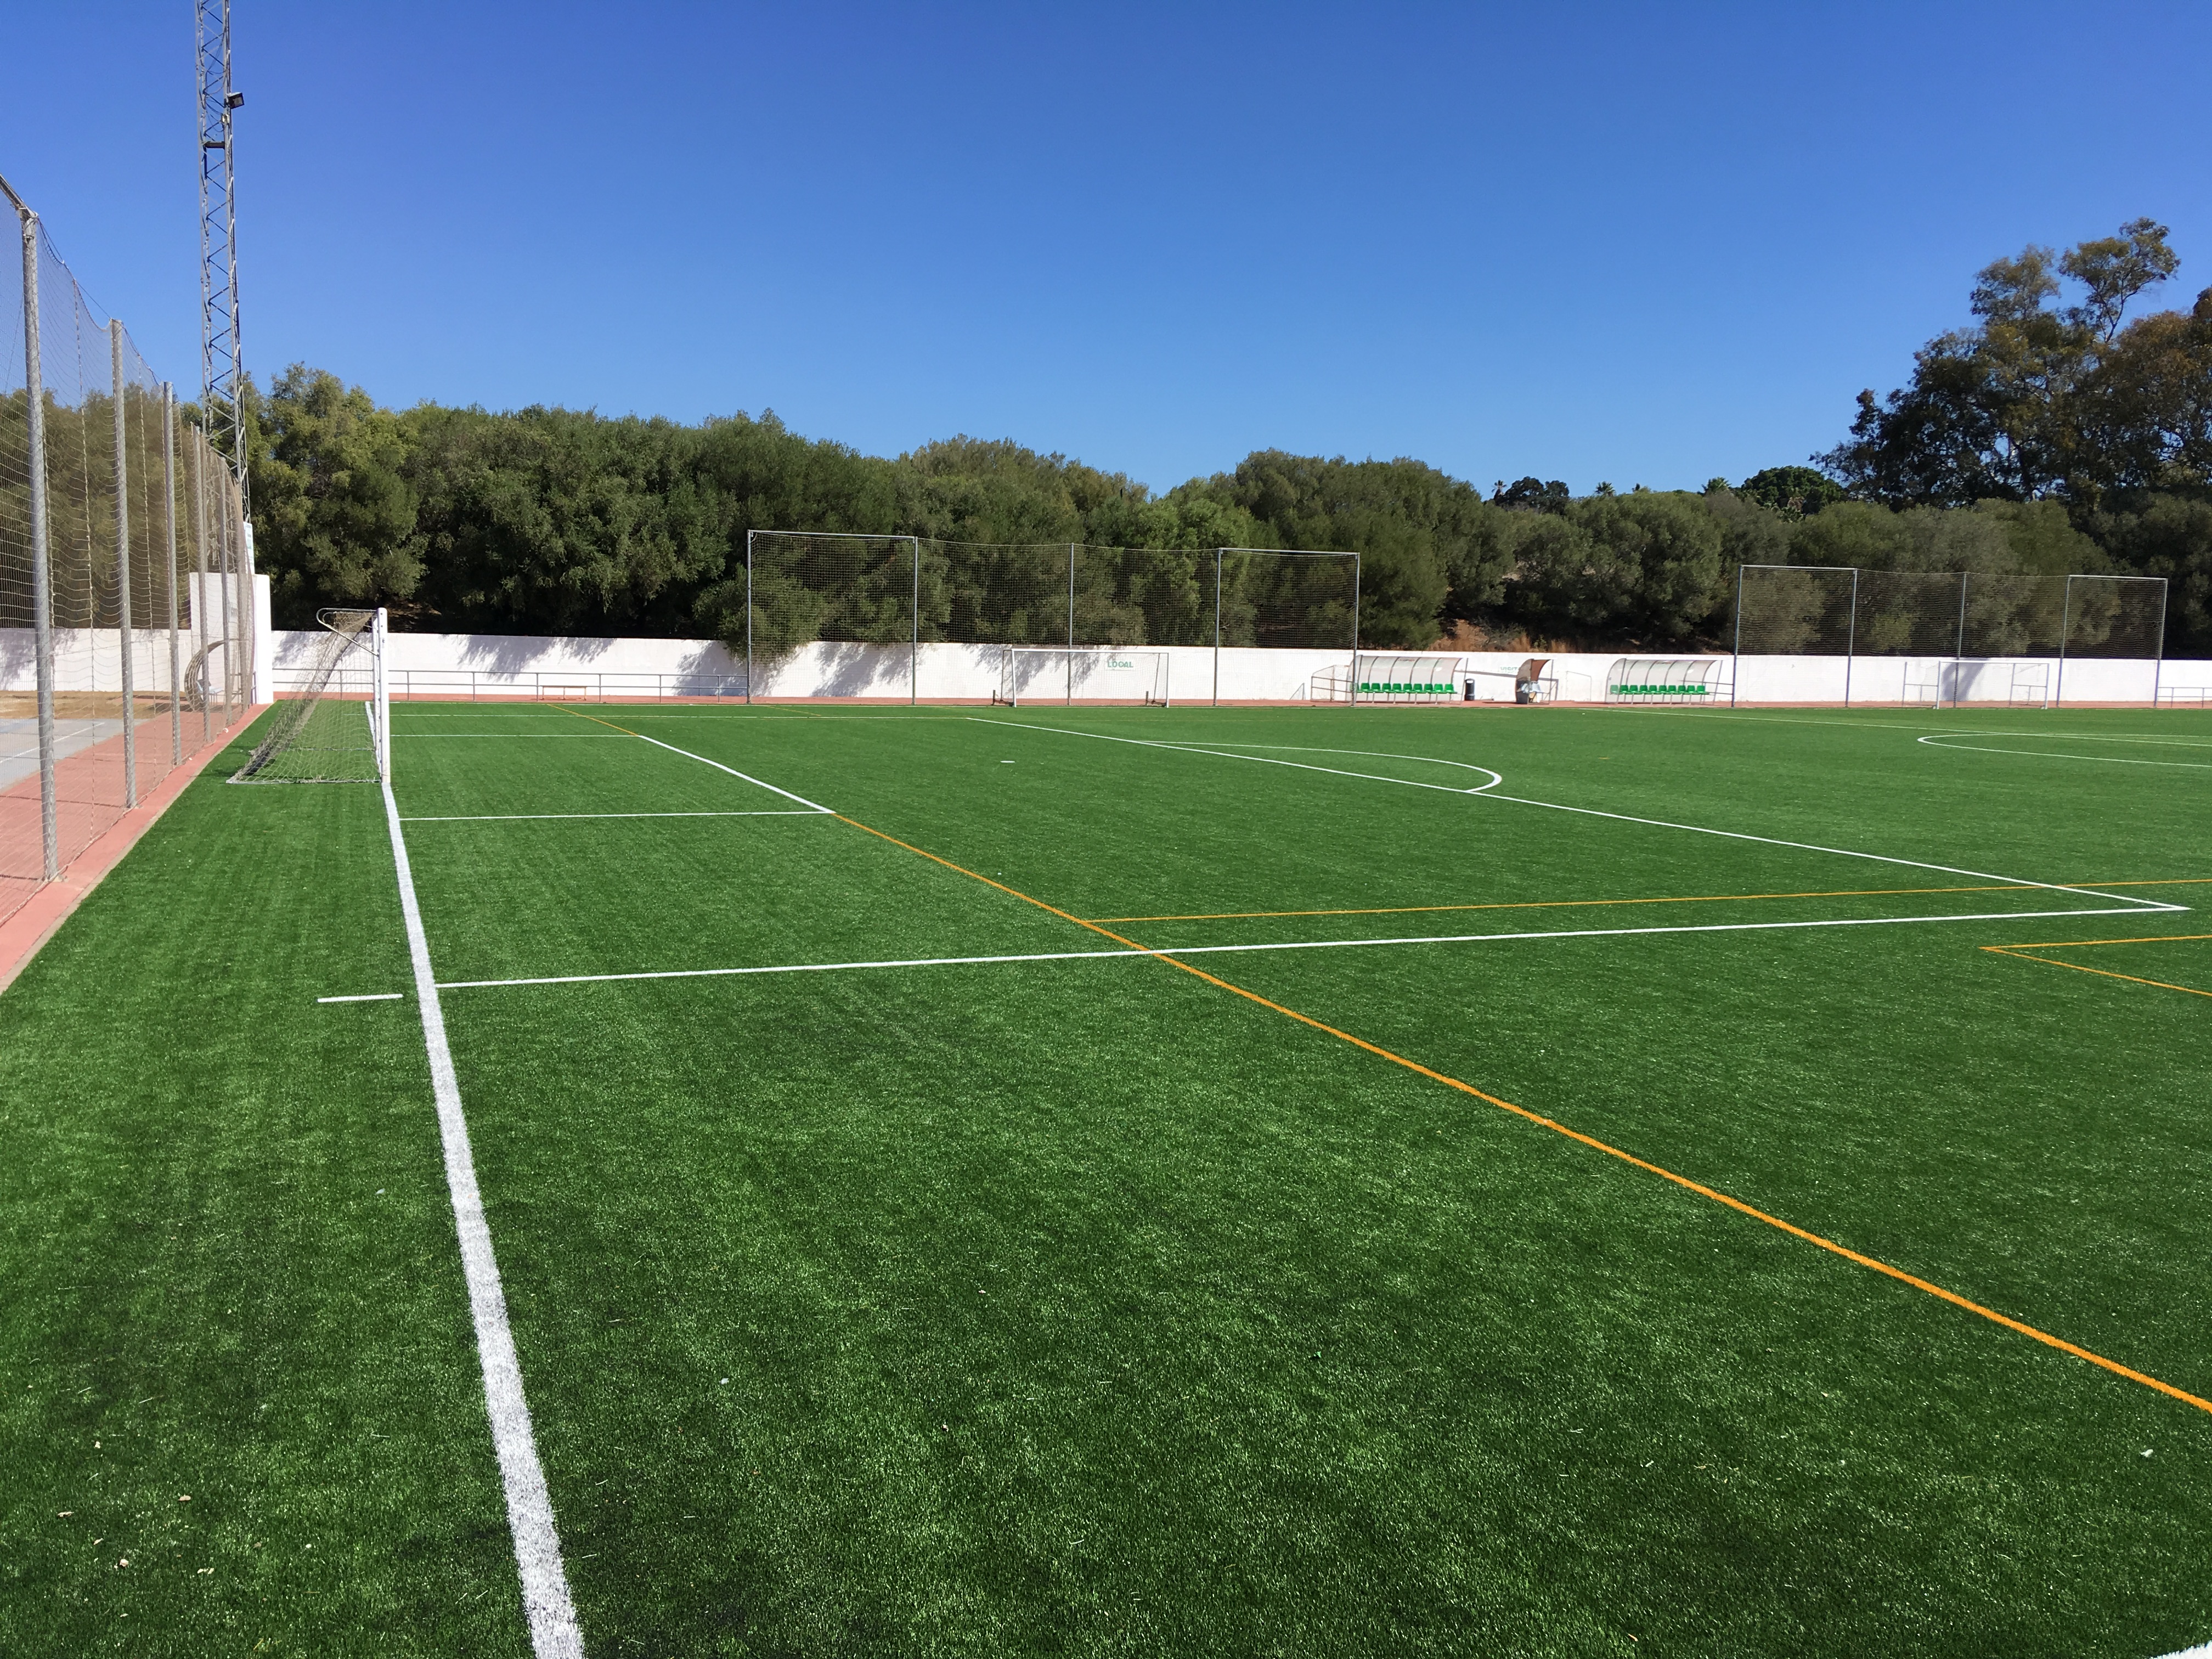 Campo de Fútbol municipal Hnos García Mota – San Roque, Cádiz Image